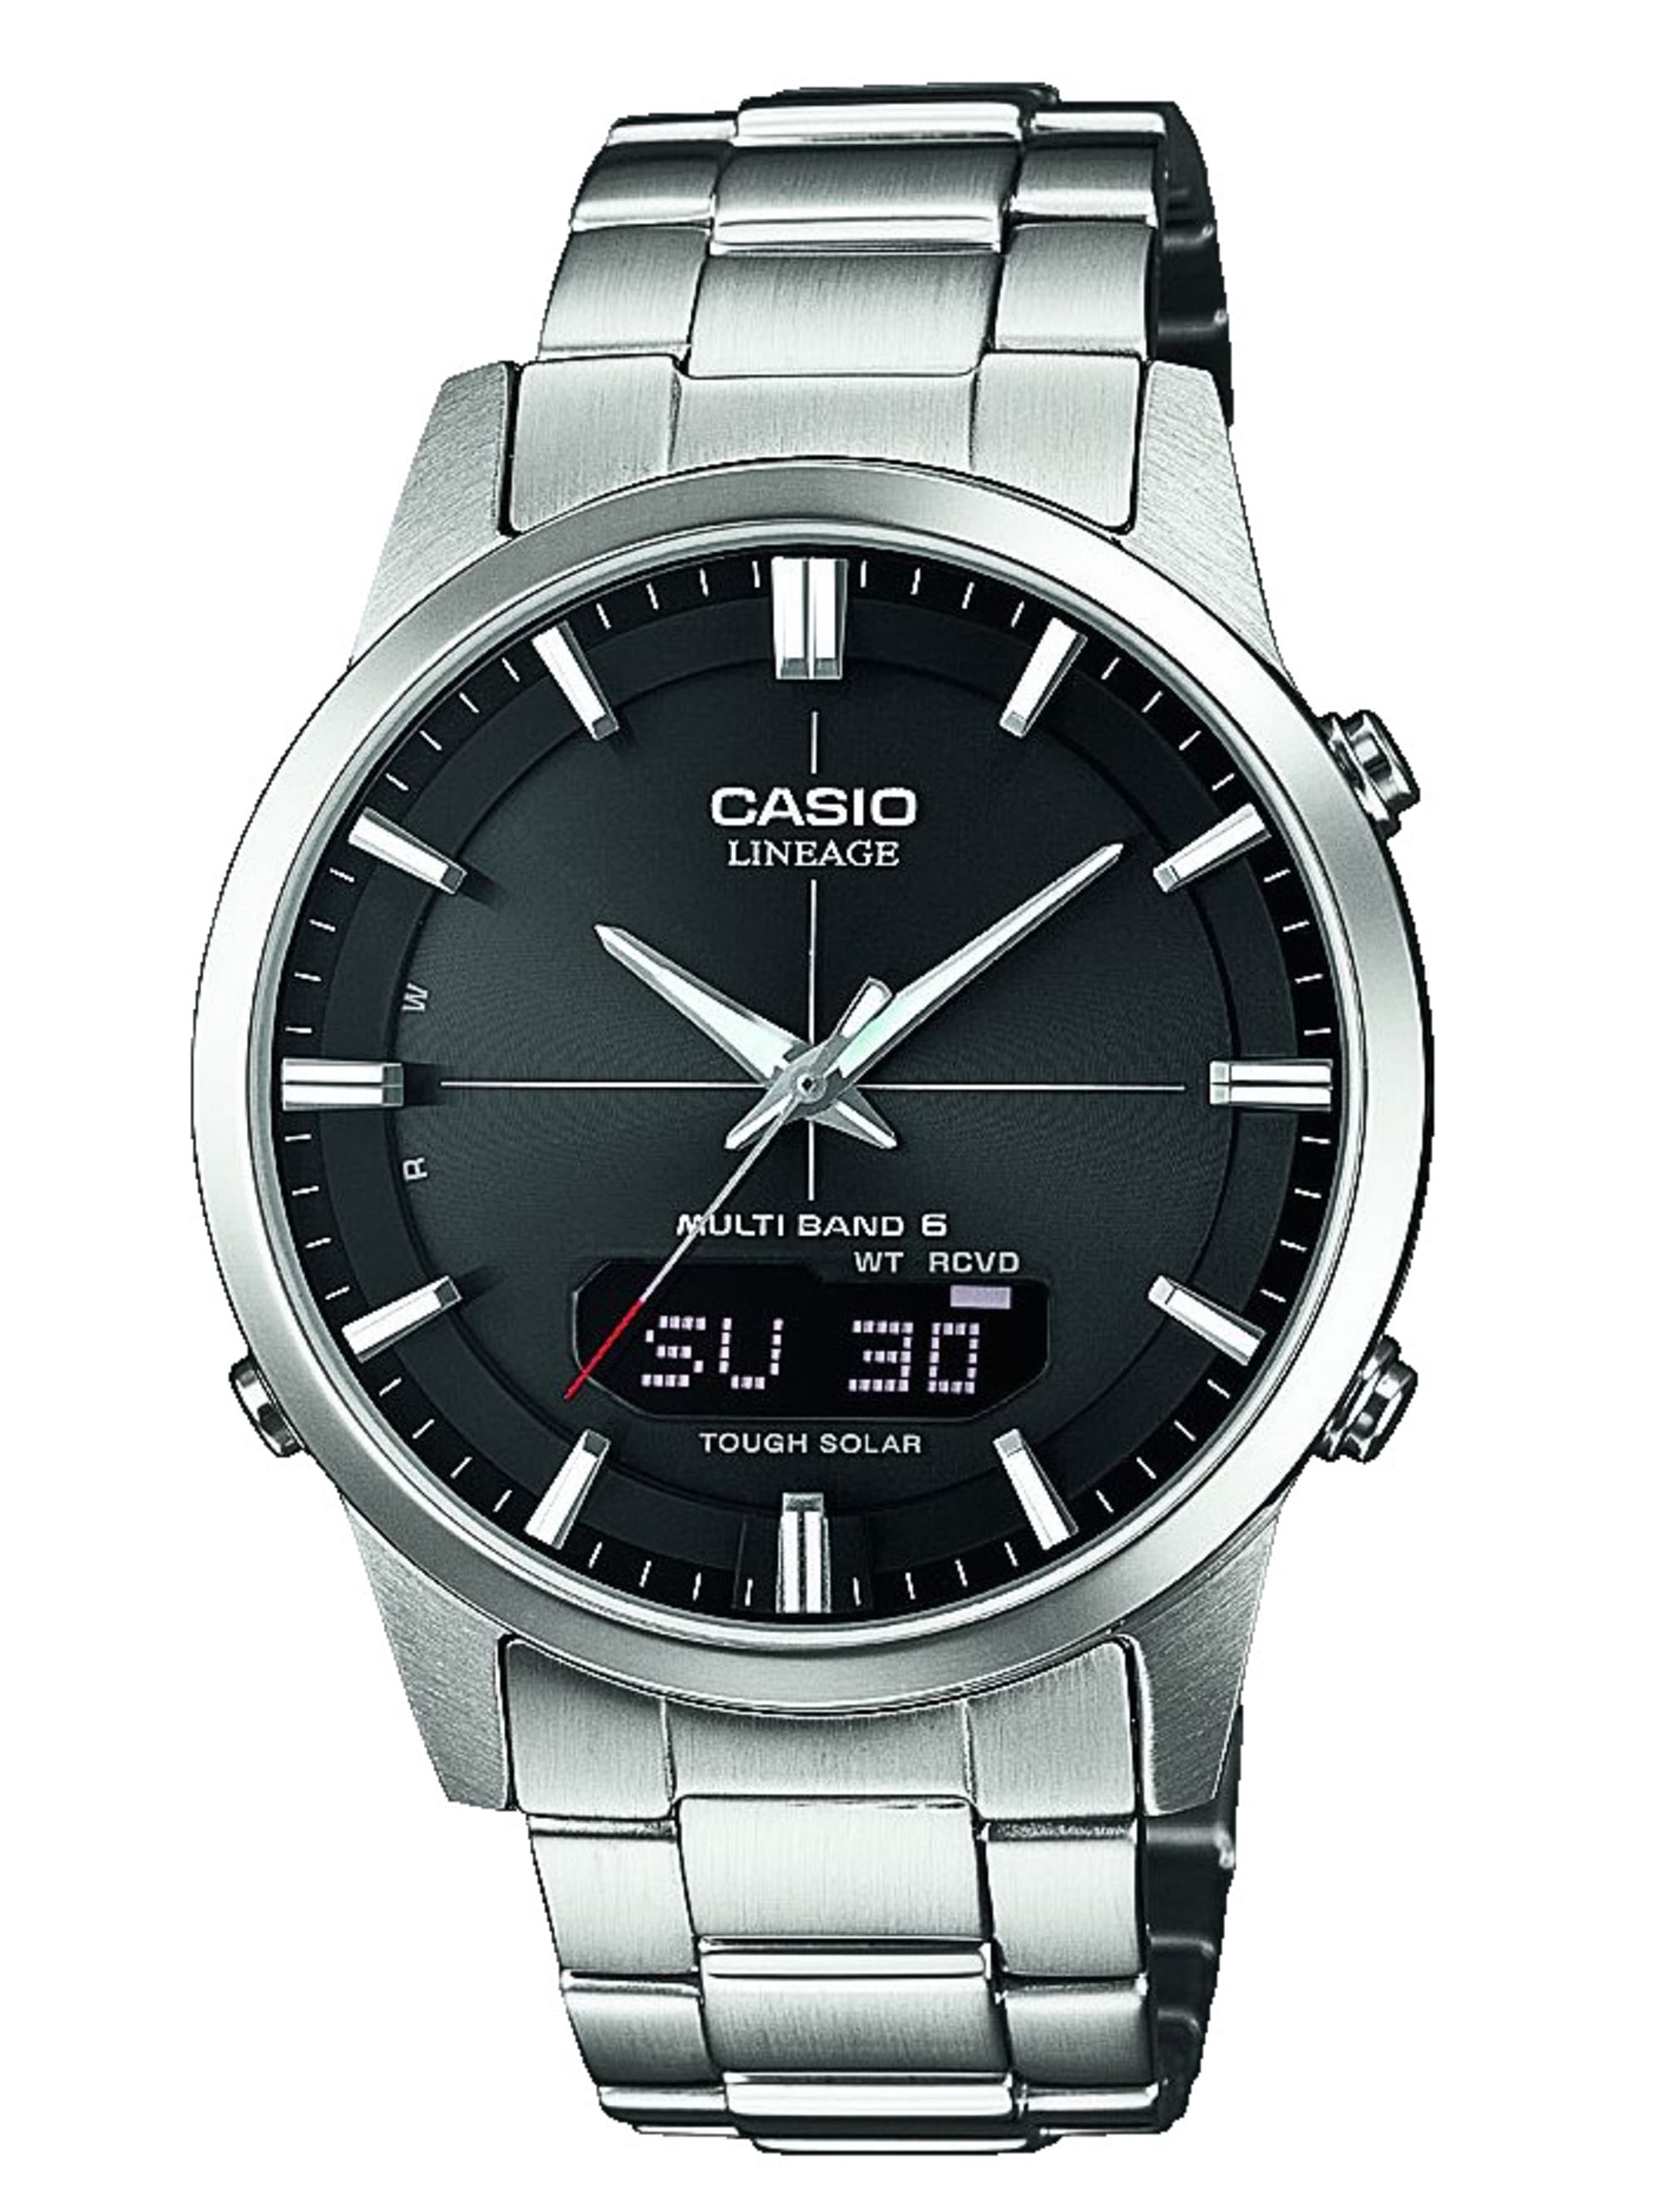 Funkuhr Solar Armbanduhr Herren Uhr Casio